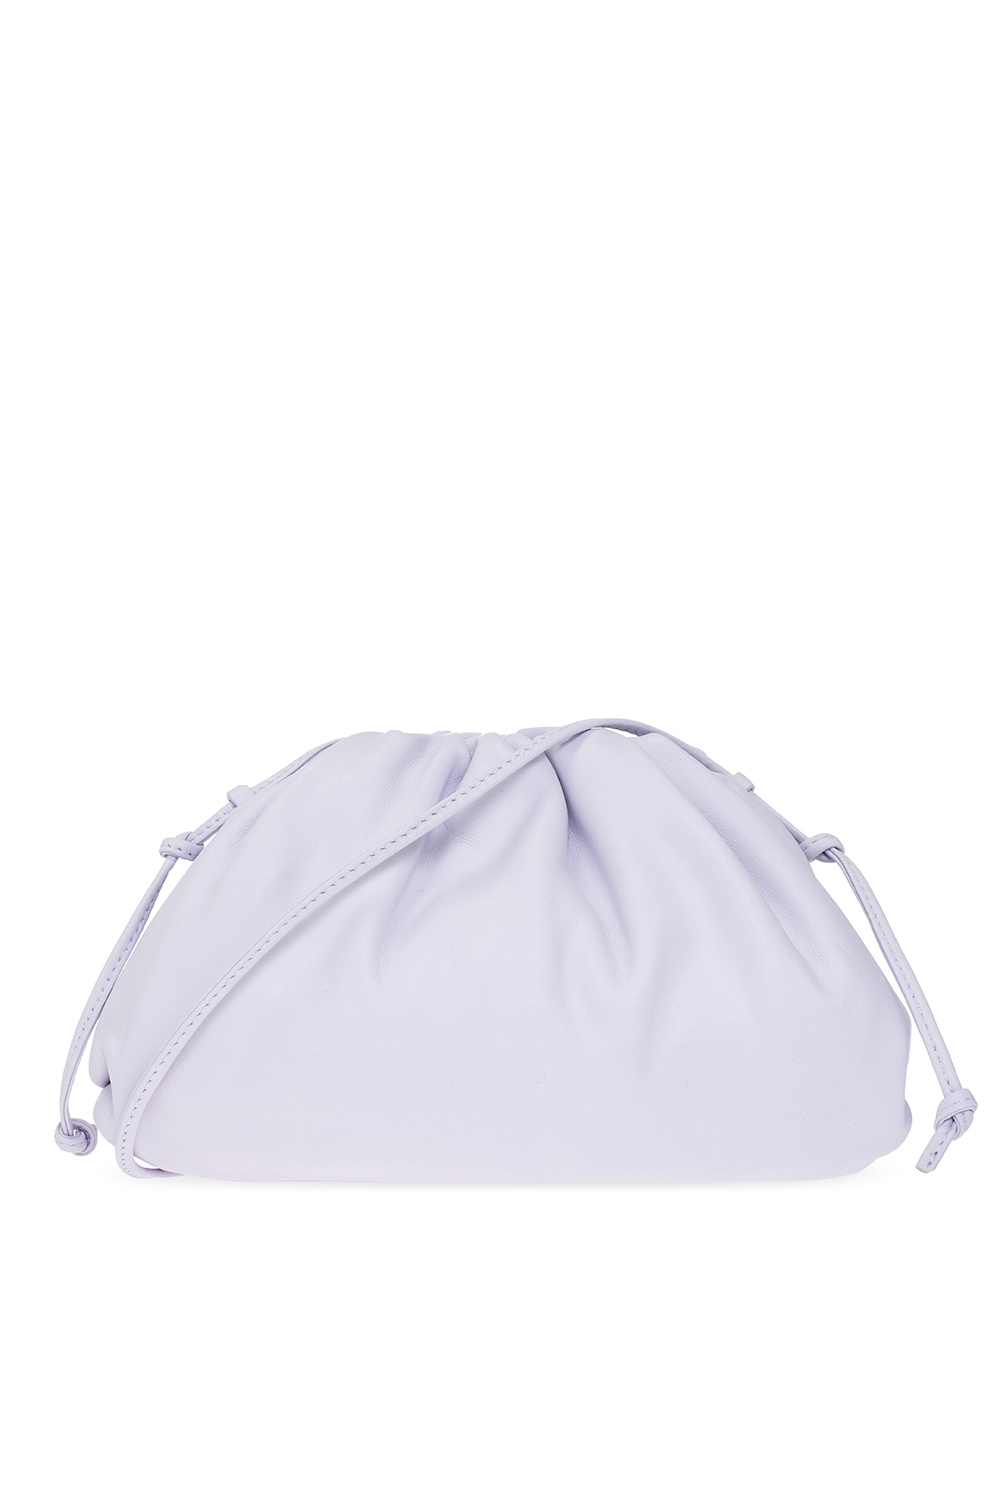 Bottega Veneta ‘Mini Pouch’ shoulder bag